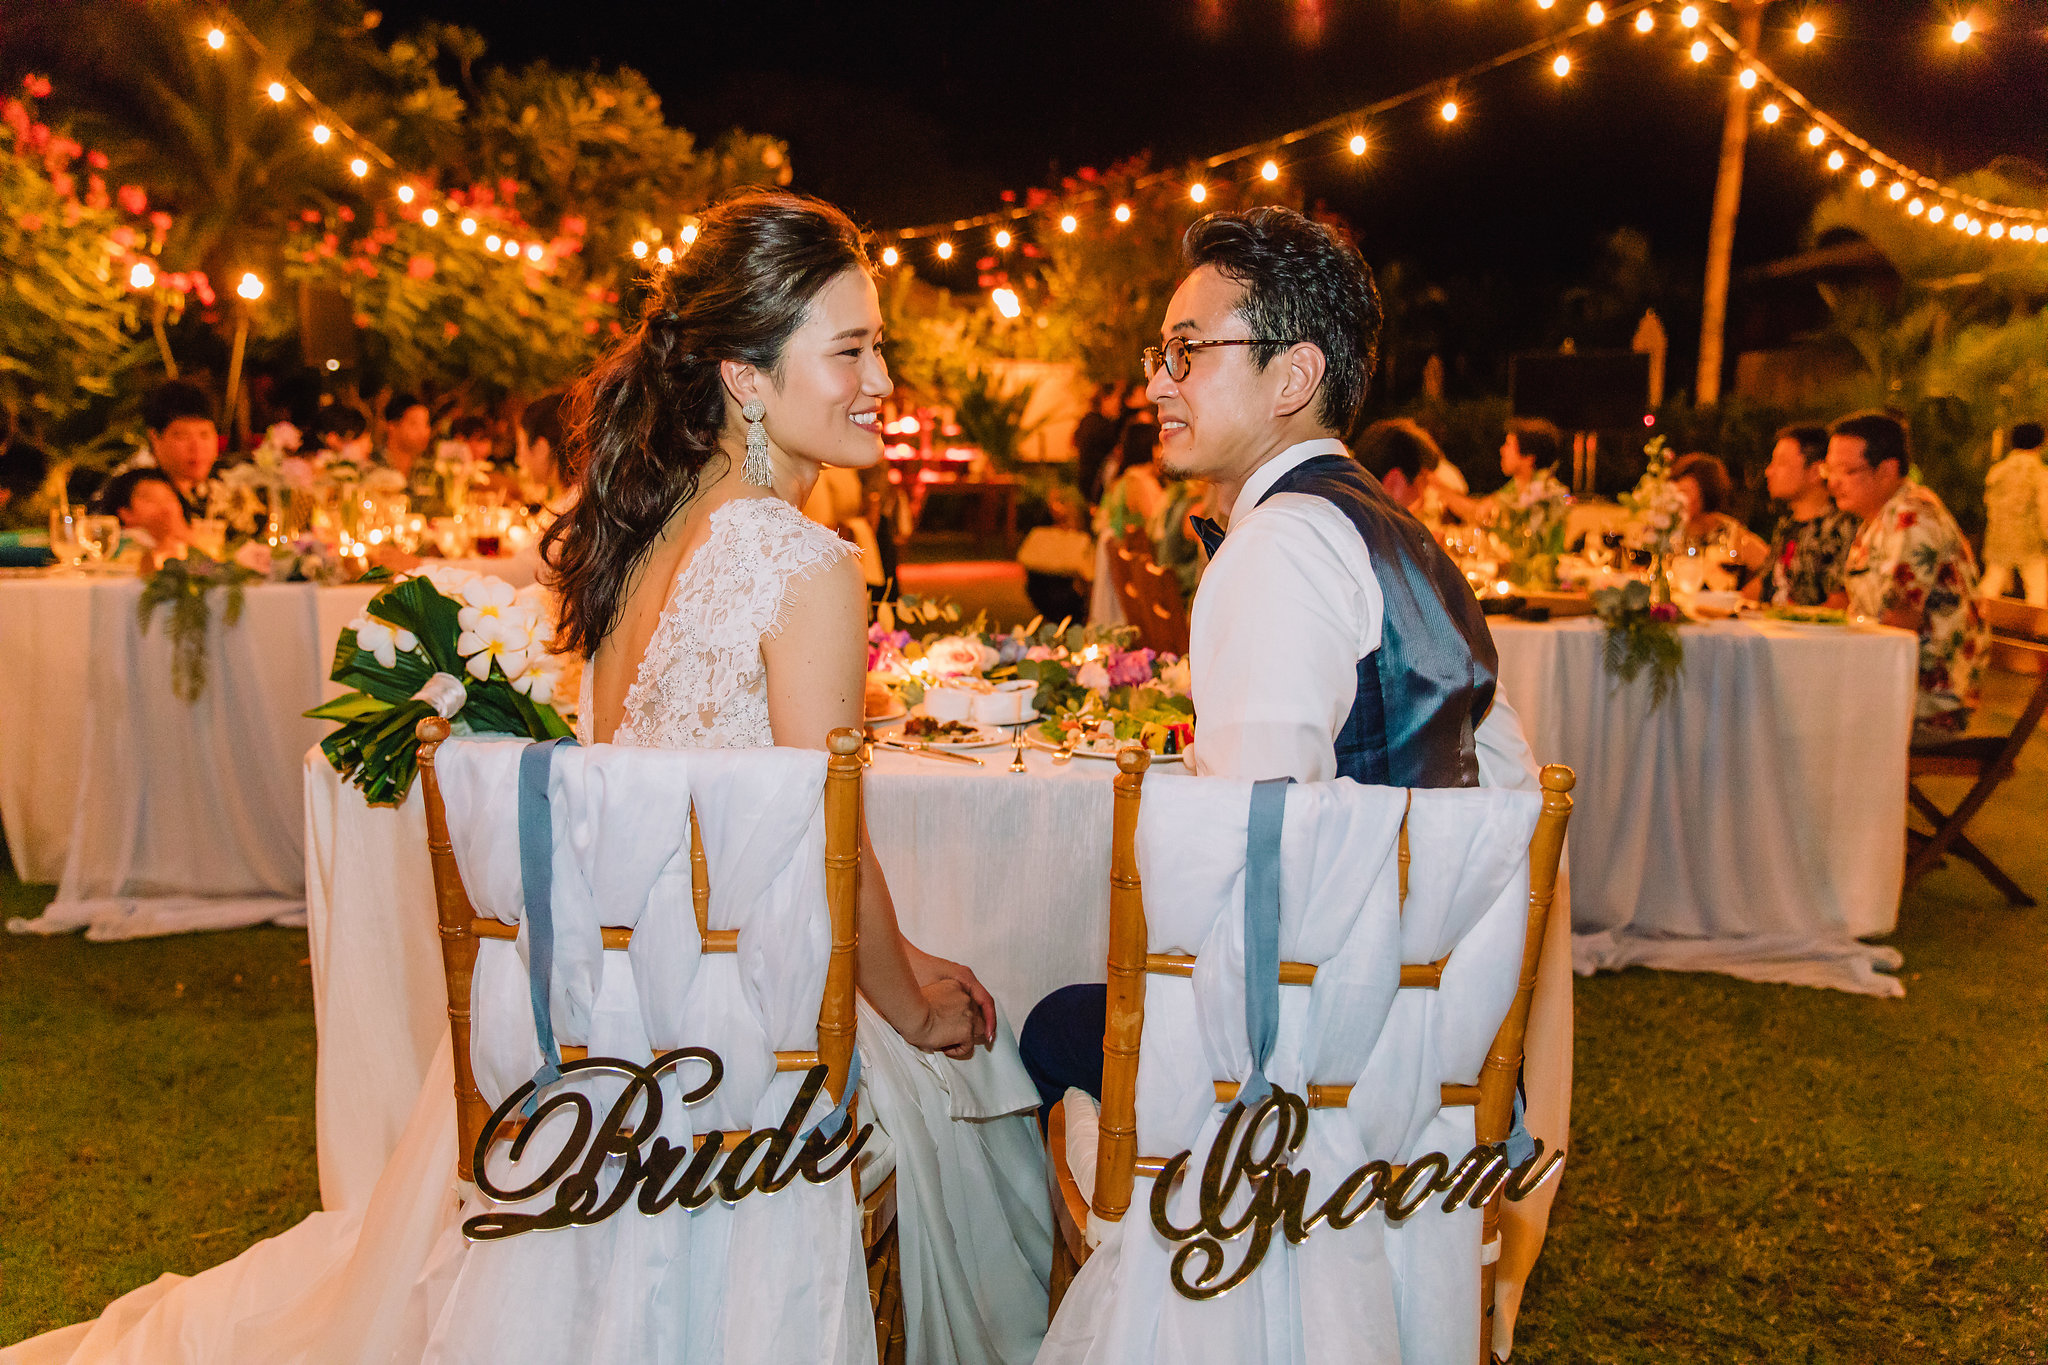 ガーデンで叶えるレセプションパーティー Blog 公式 Cheers Wedding チアーズウェディング ハワイウェディング 結婚式 プロデュース